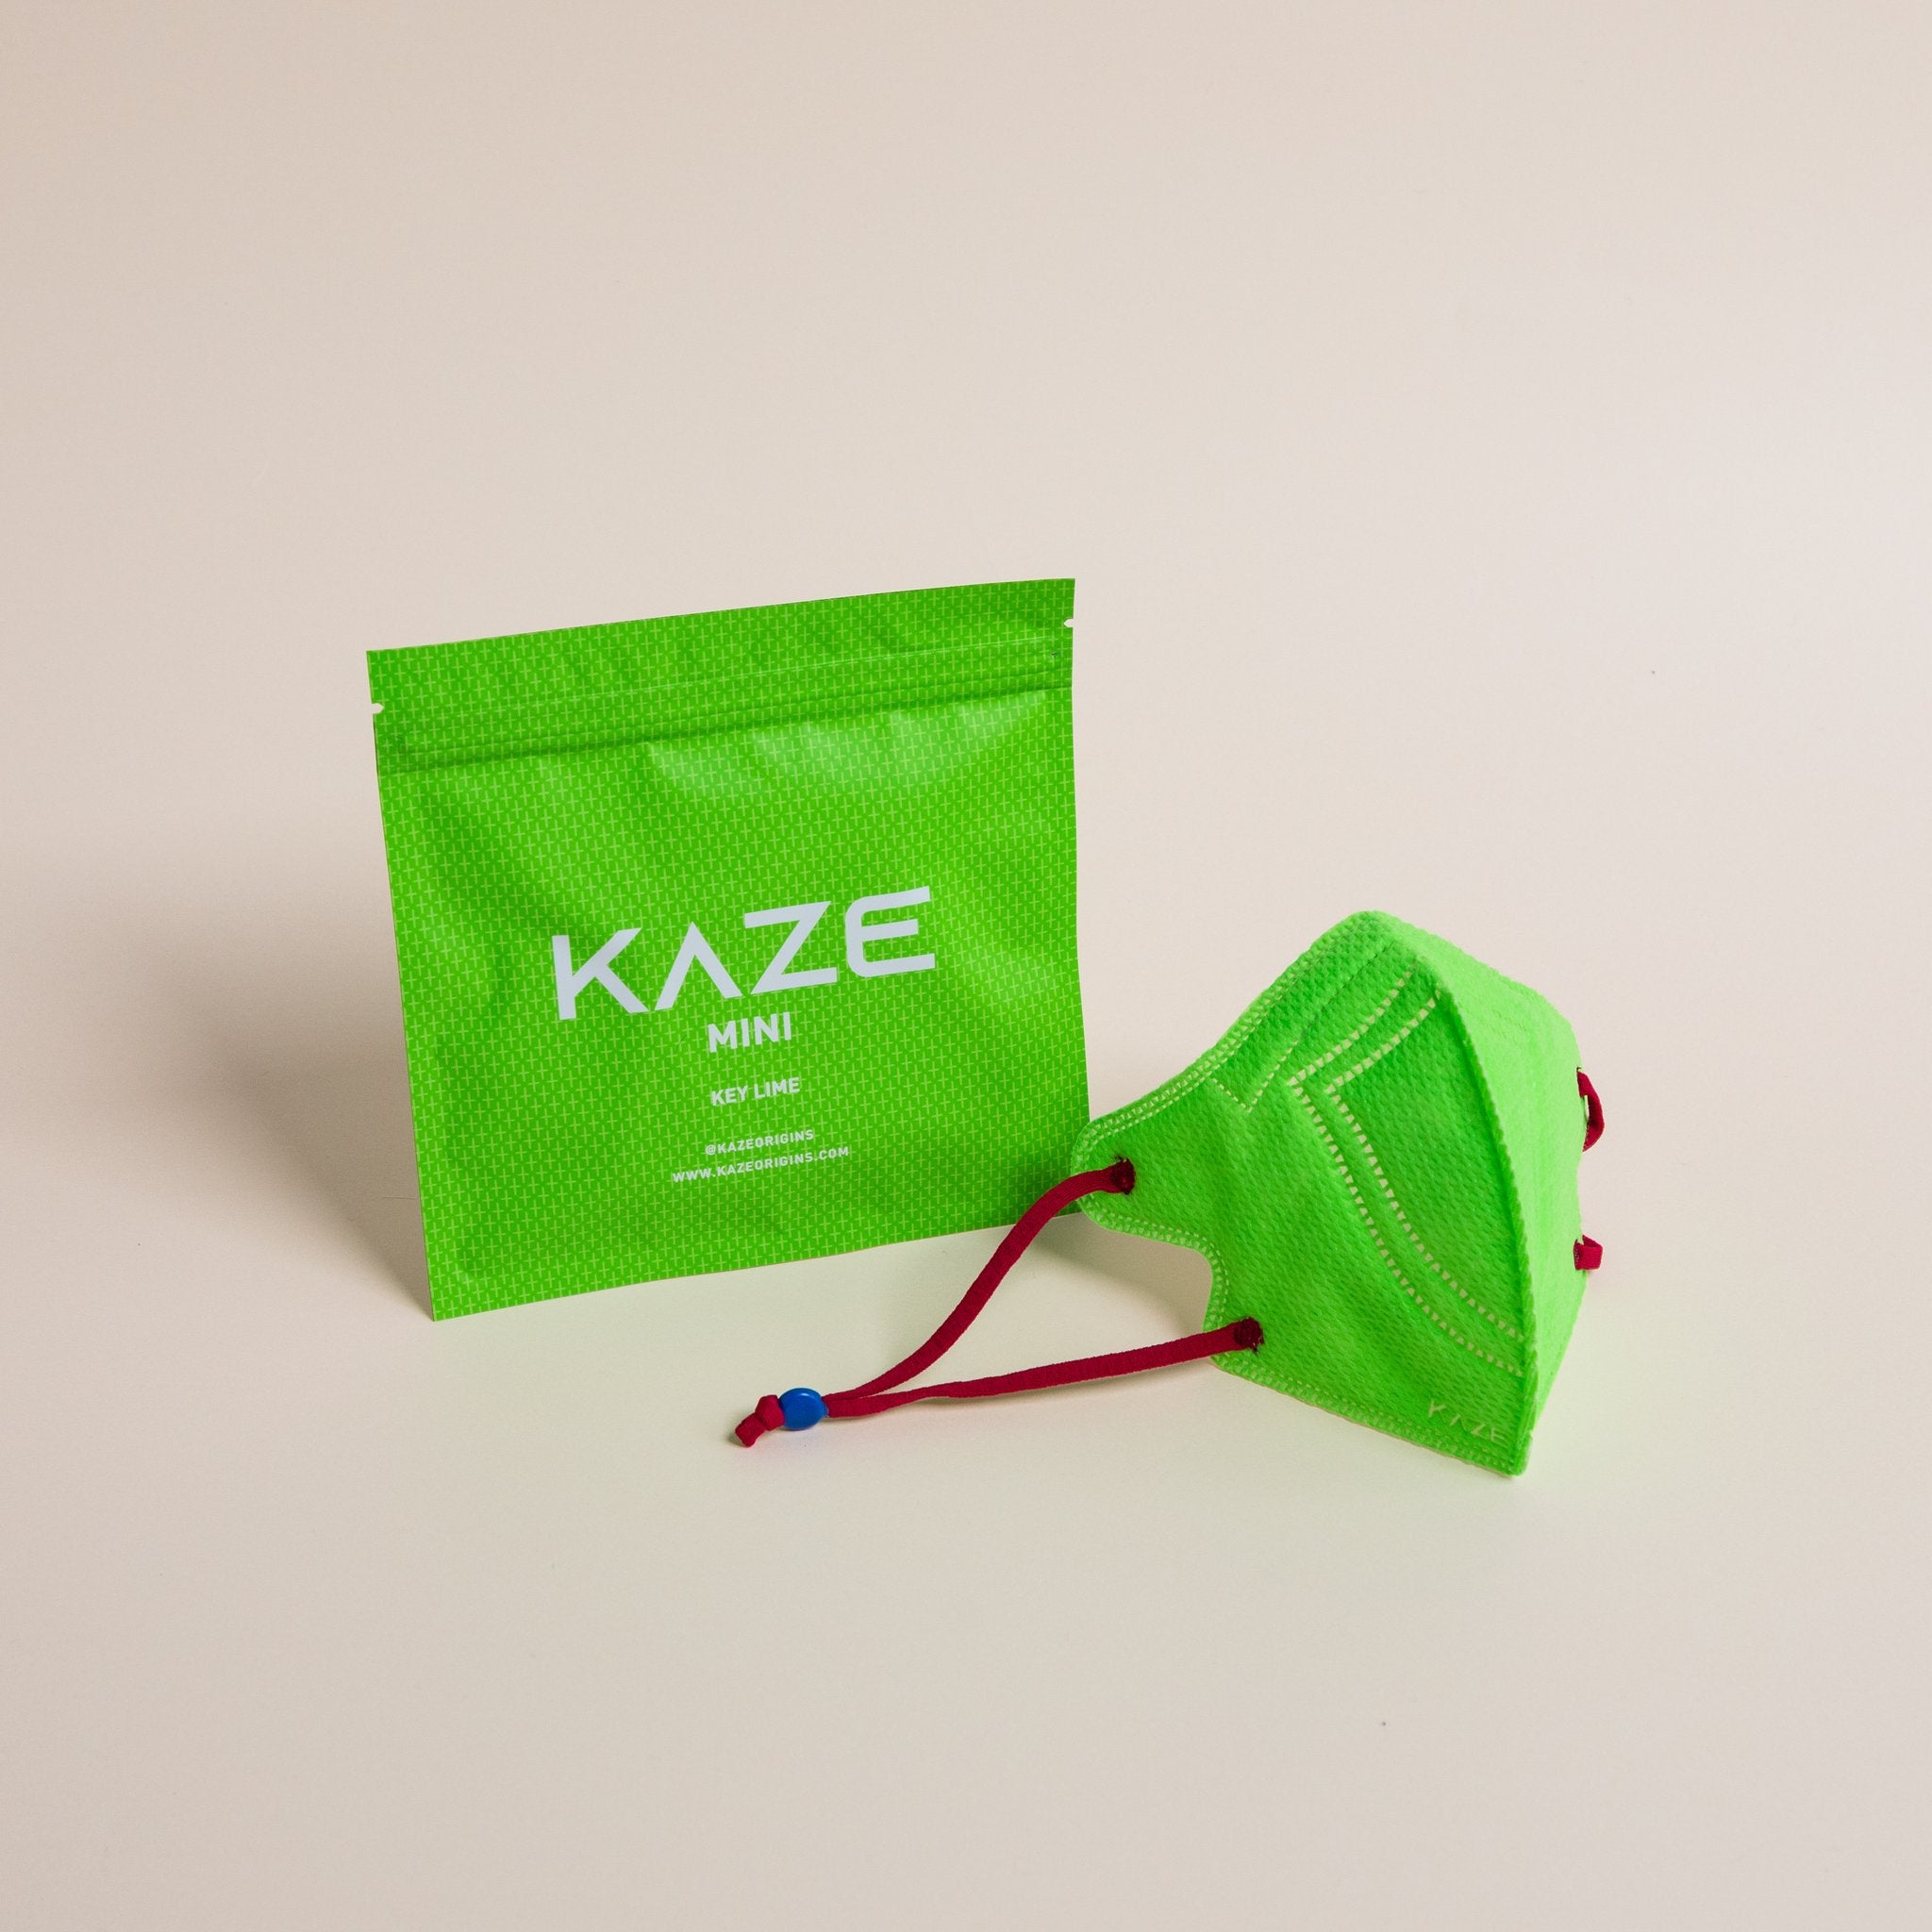 KAZE Masks - Mini Eye Candy Series